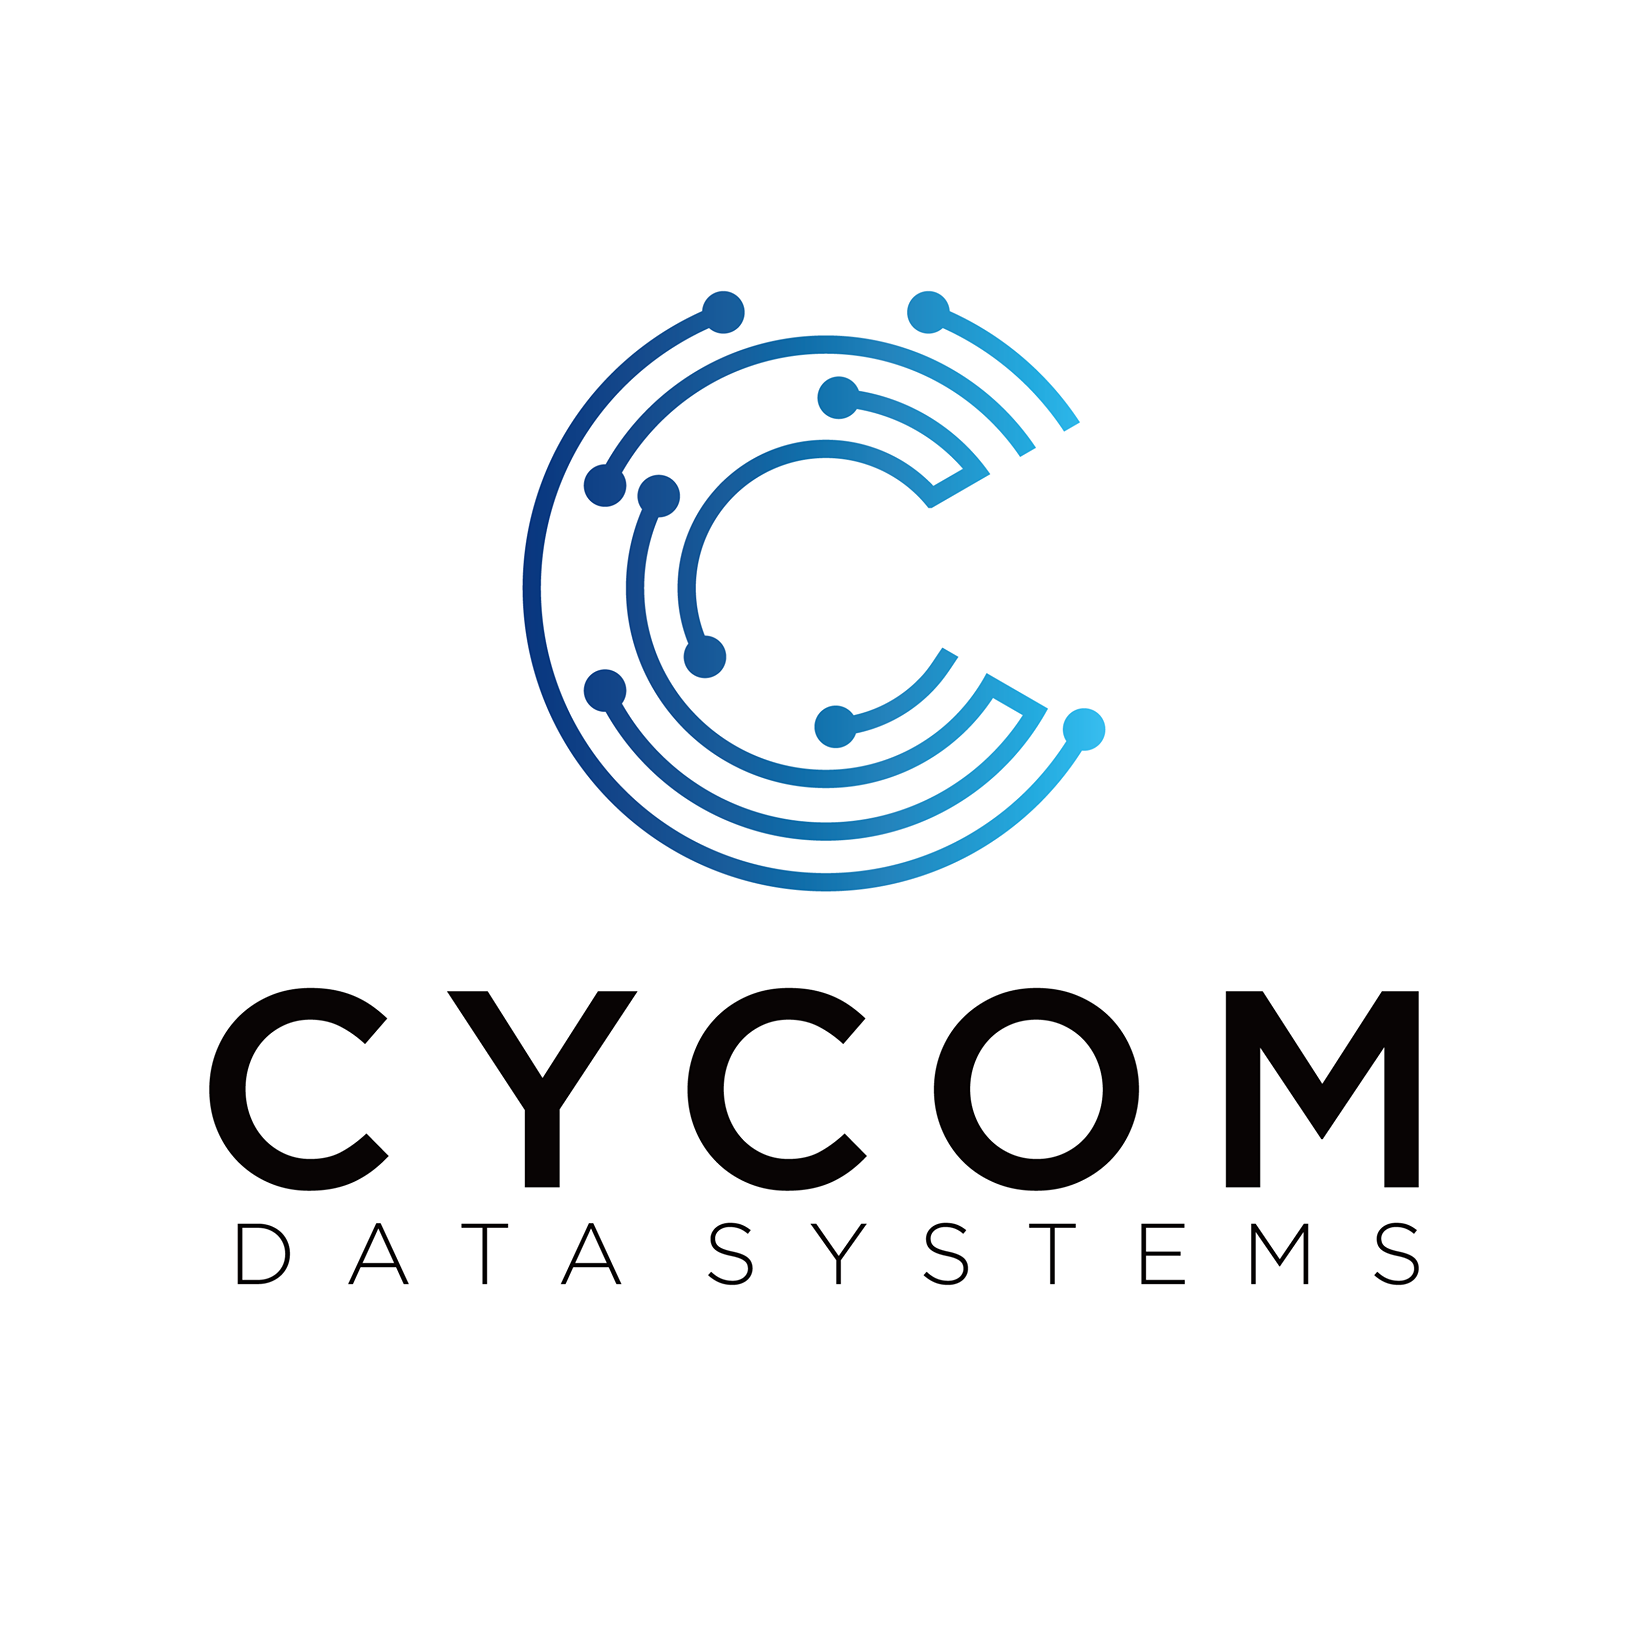 Cycom Data Systems